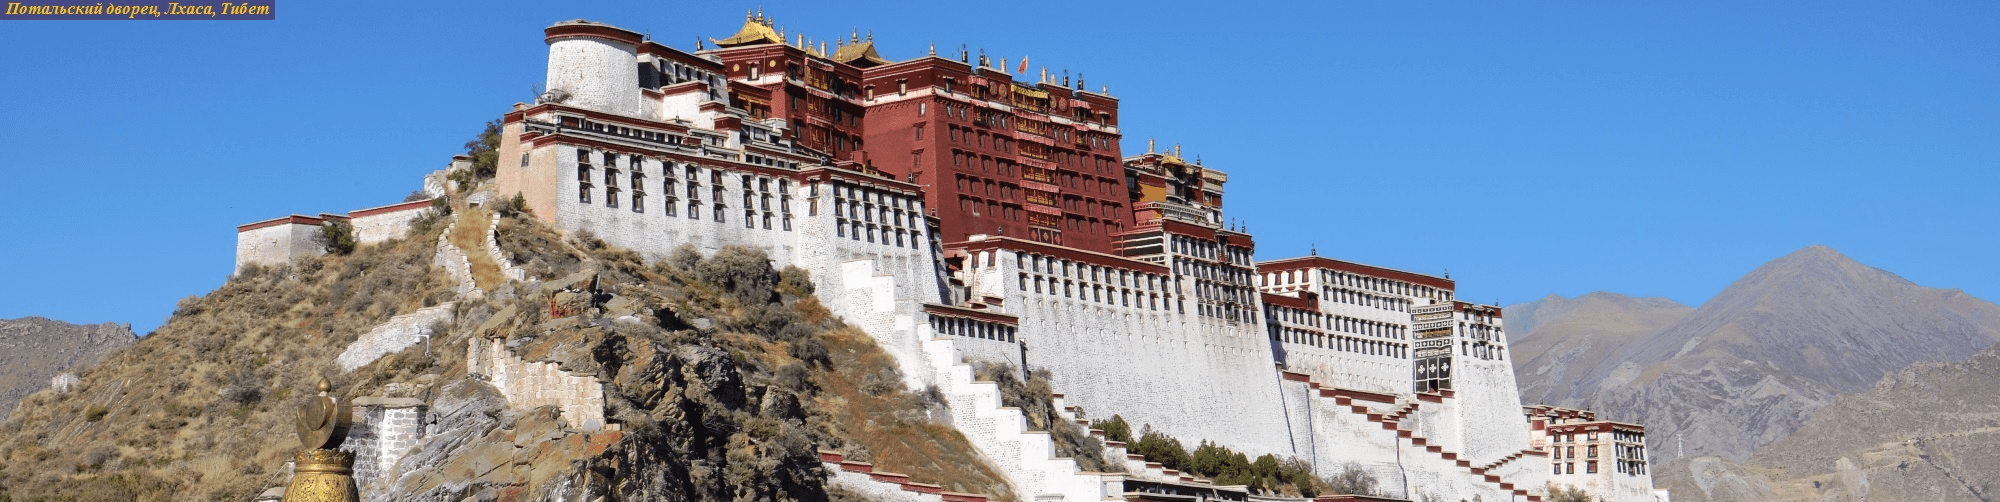 Потальский дворец, Лхаса, Тибет